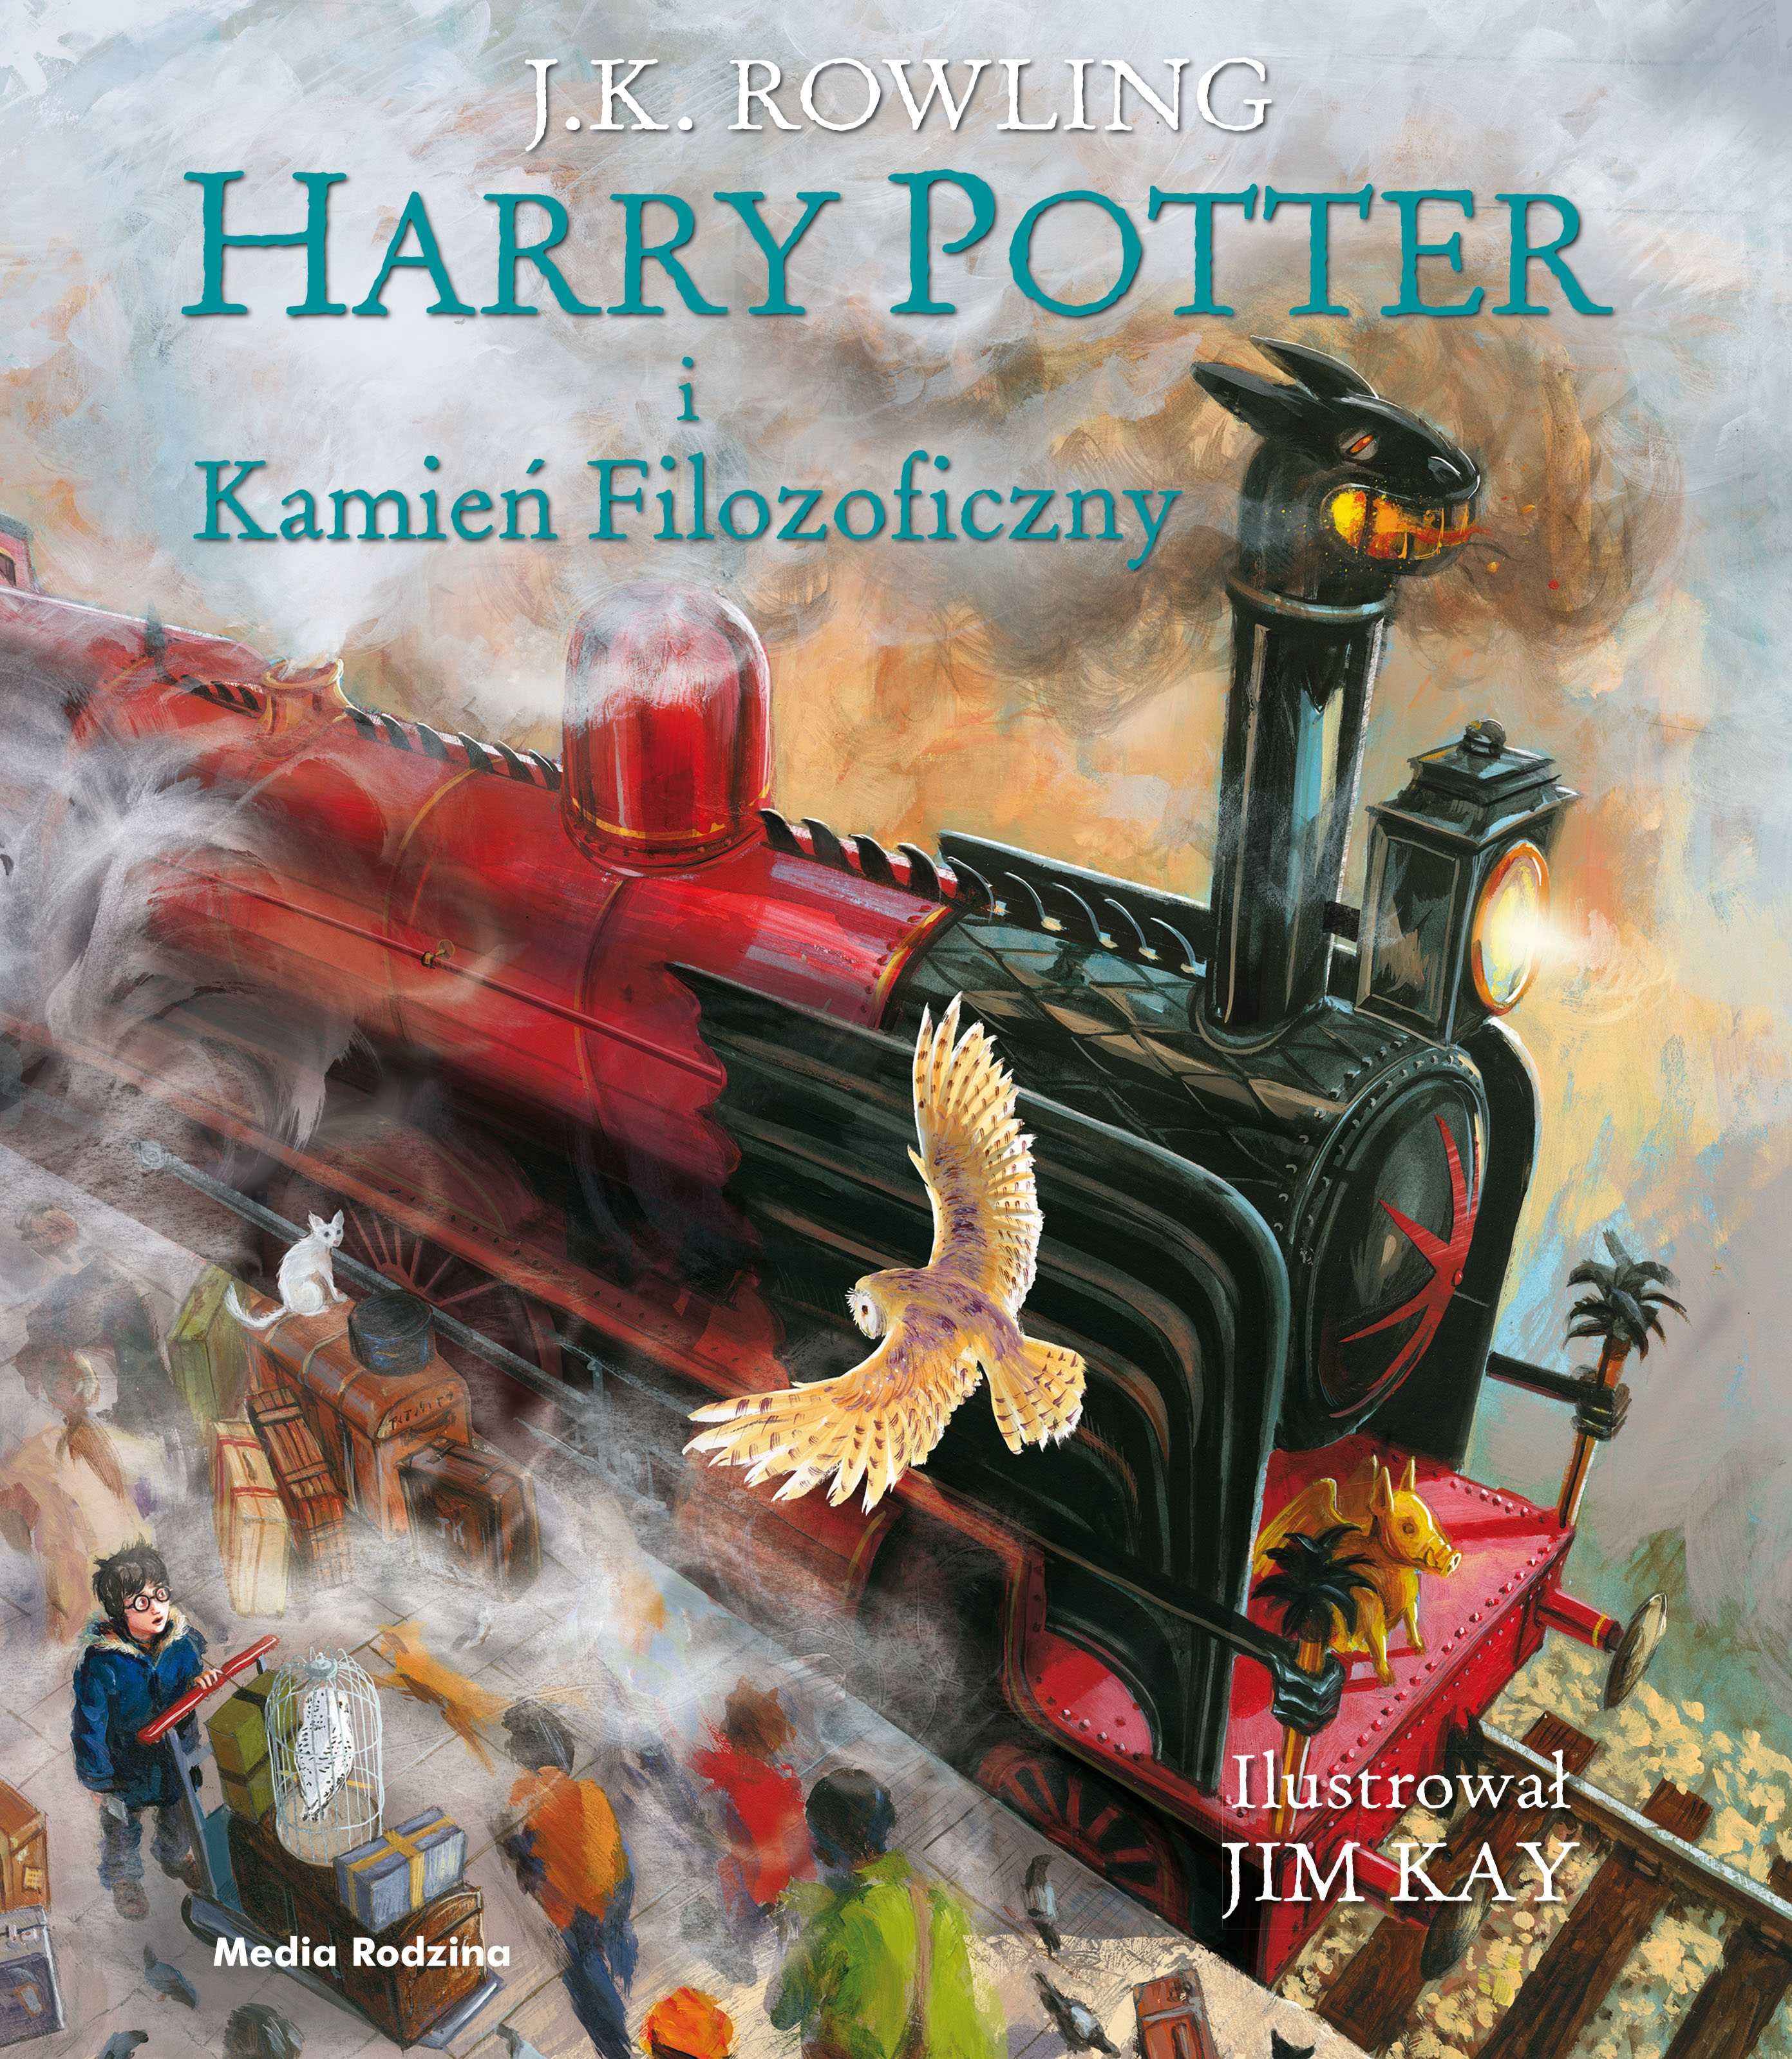 Harry Potter i Kamień Filozoficzny wydanie ilustrowane Rowling nowa